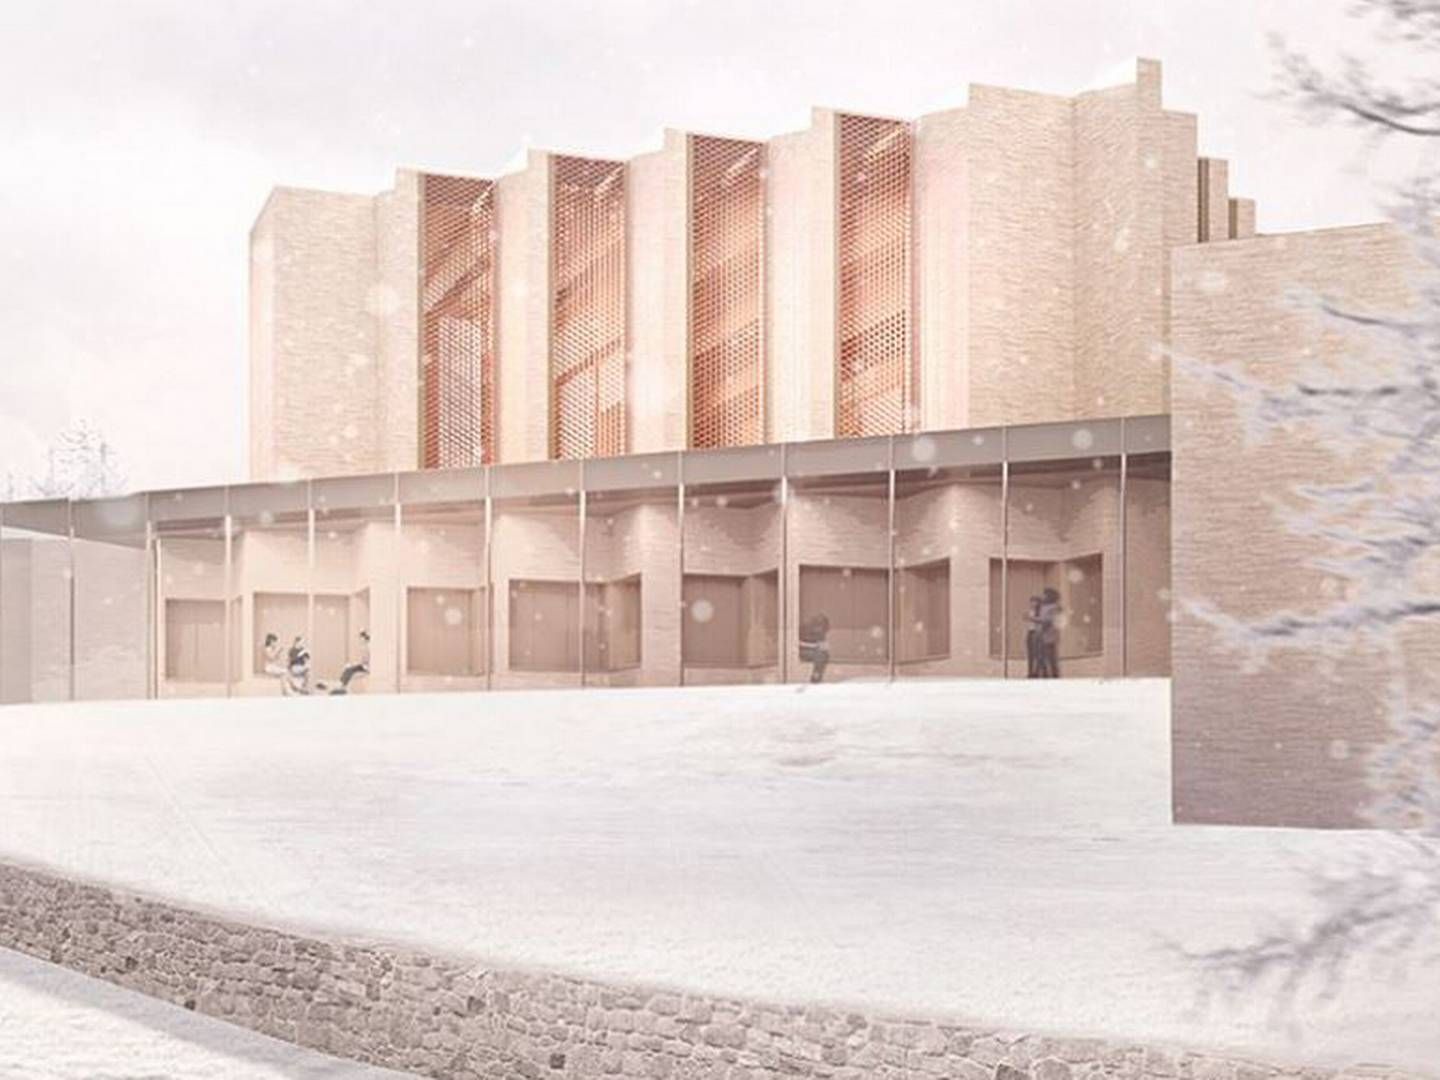 Højvangen Kirke får ifølge juryen "en god balance mellem det store fællesskab og det private." | Foto: Henning Larsen Architects